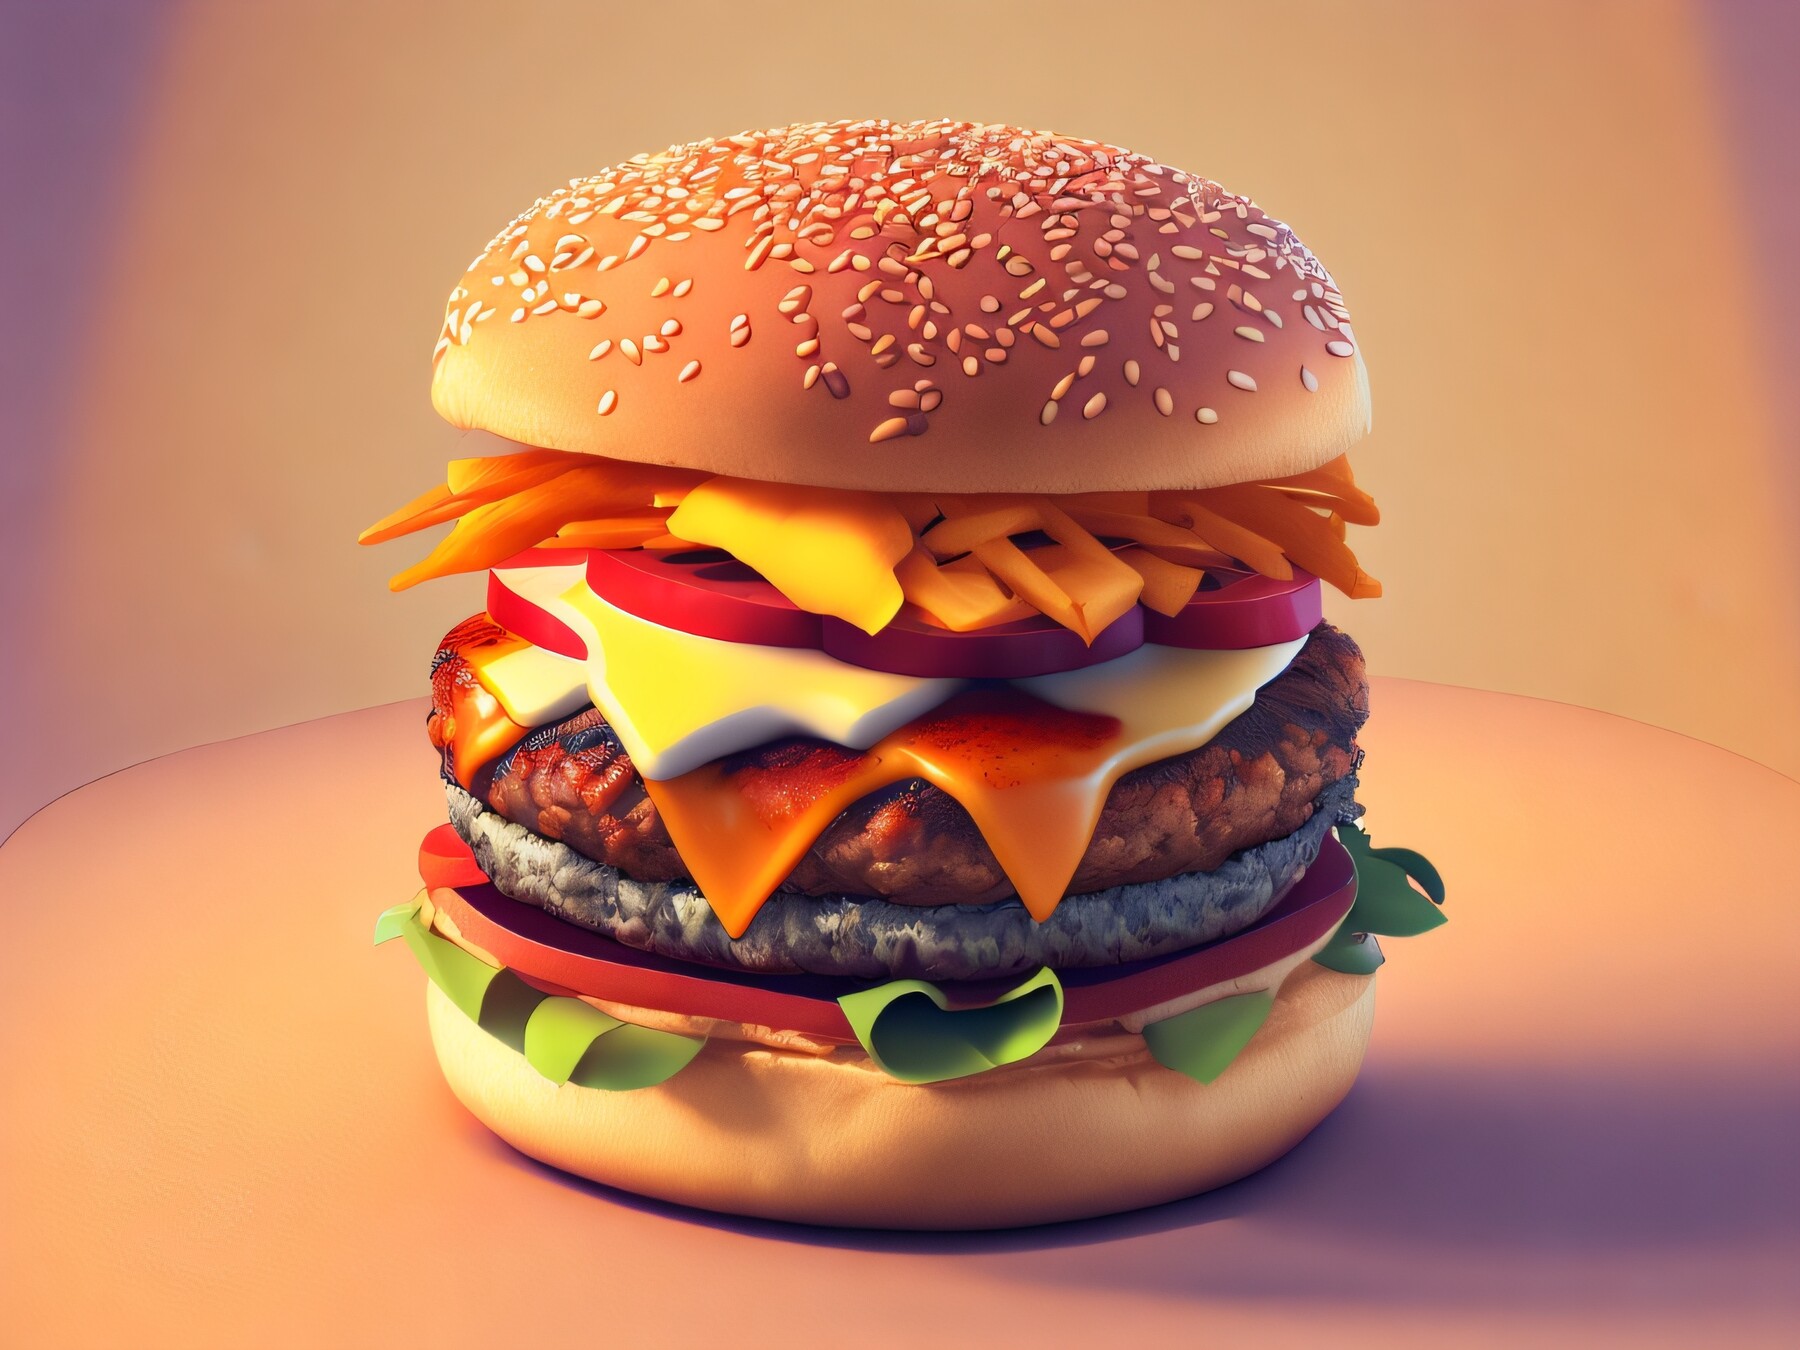 ArtStation - The Ultimate Burger | Artworks